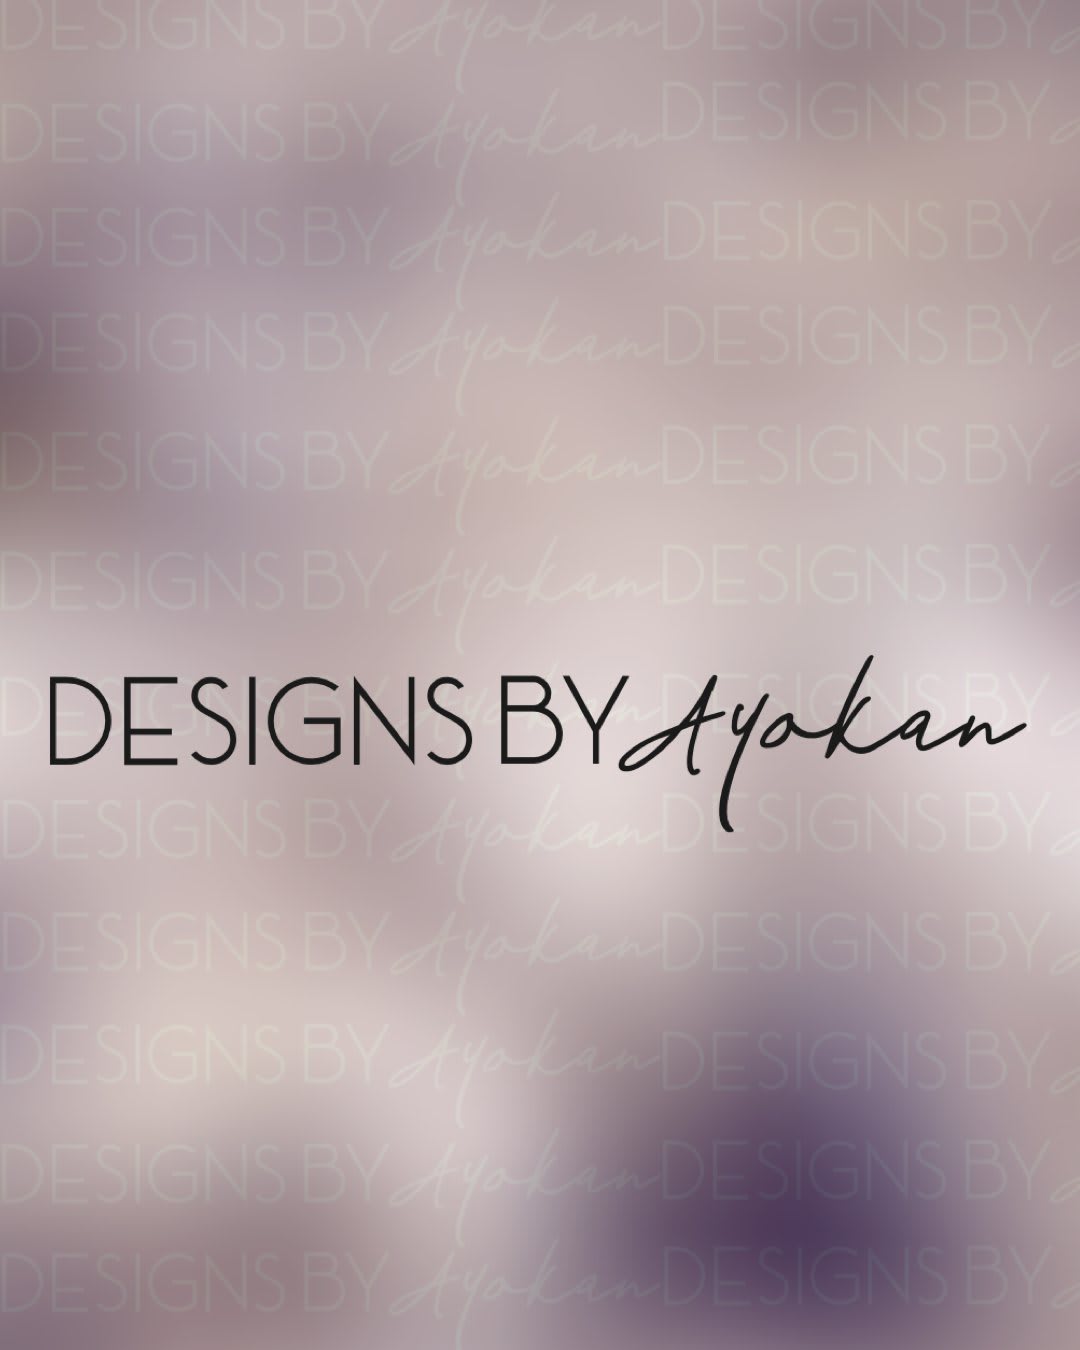 Designs by Ayokan